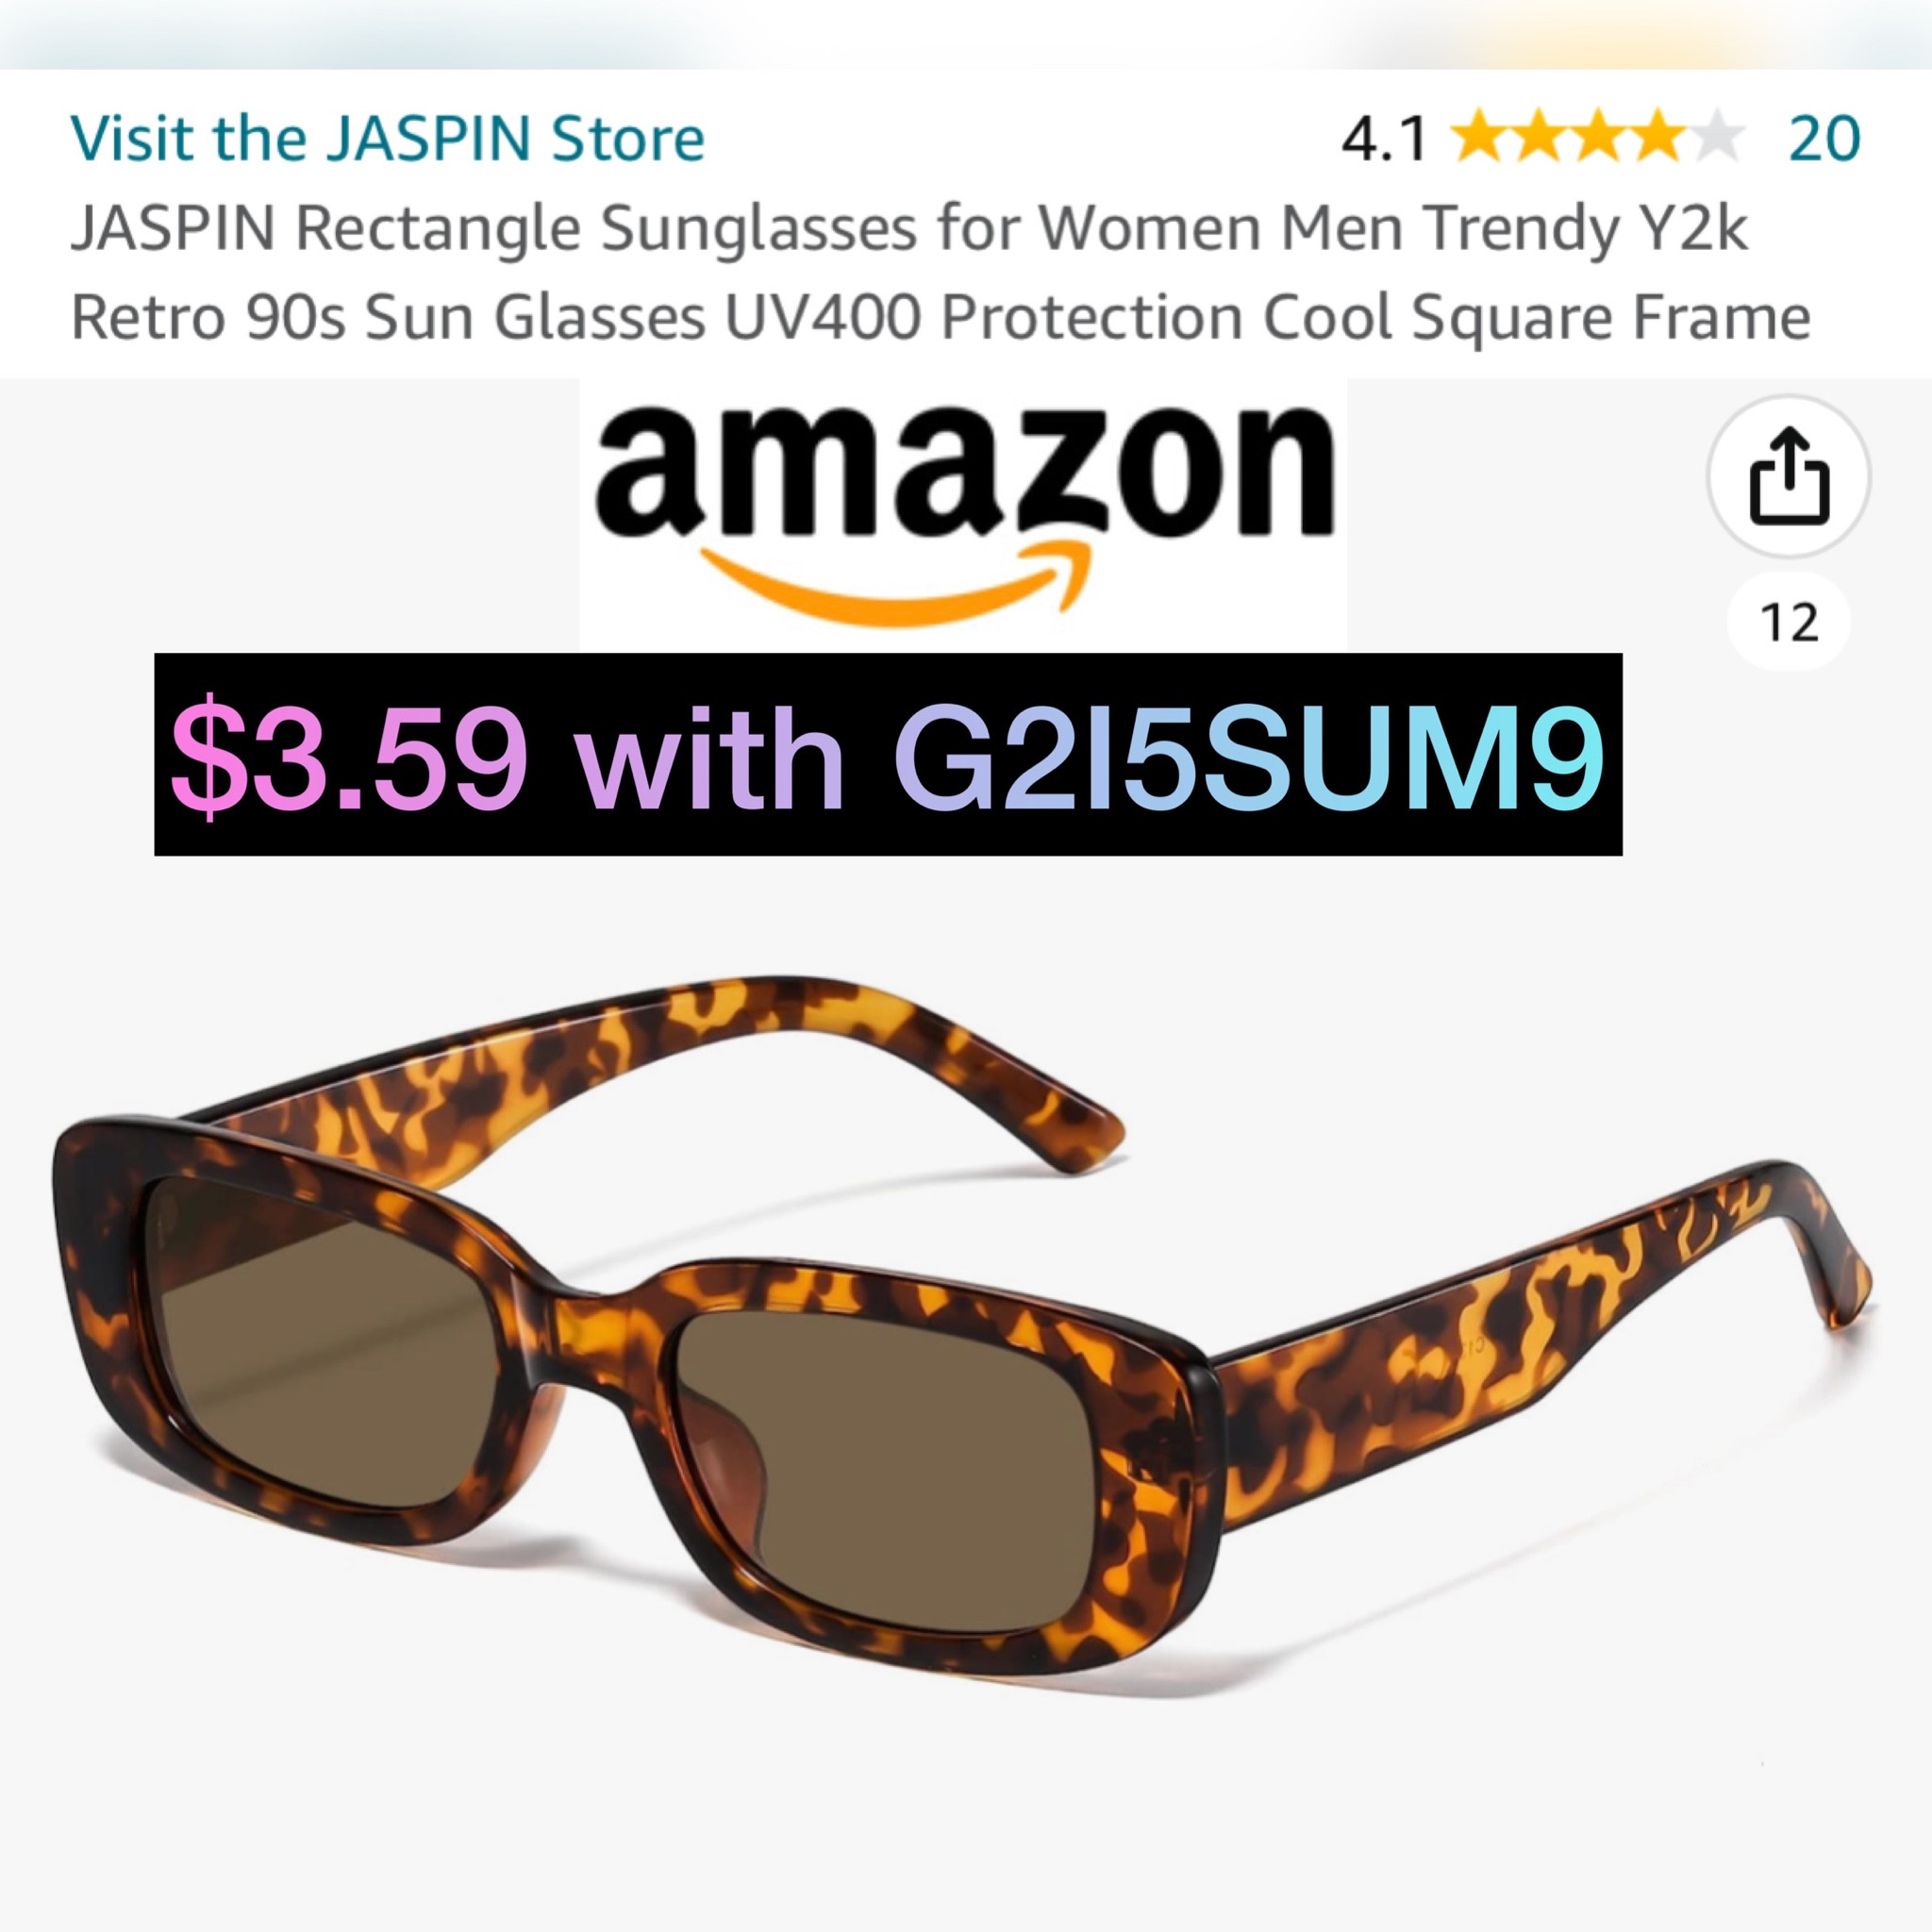  JASPIN Rectangle Sunglasses for Women Men Trendy Y2k